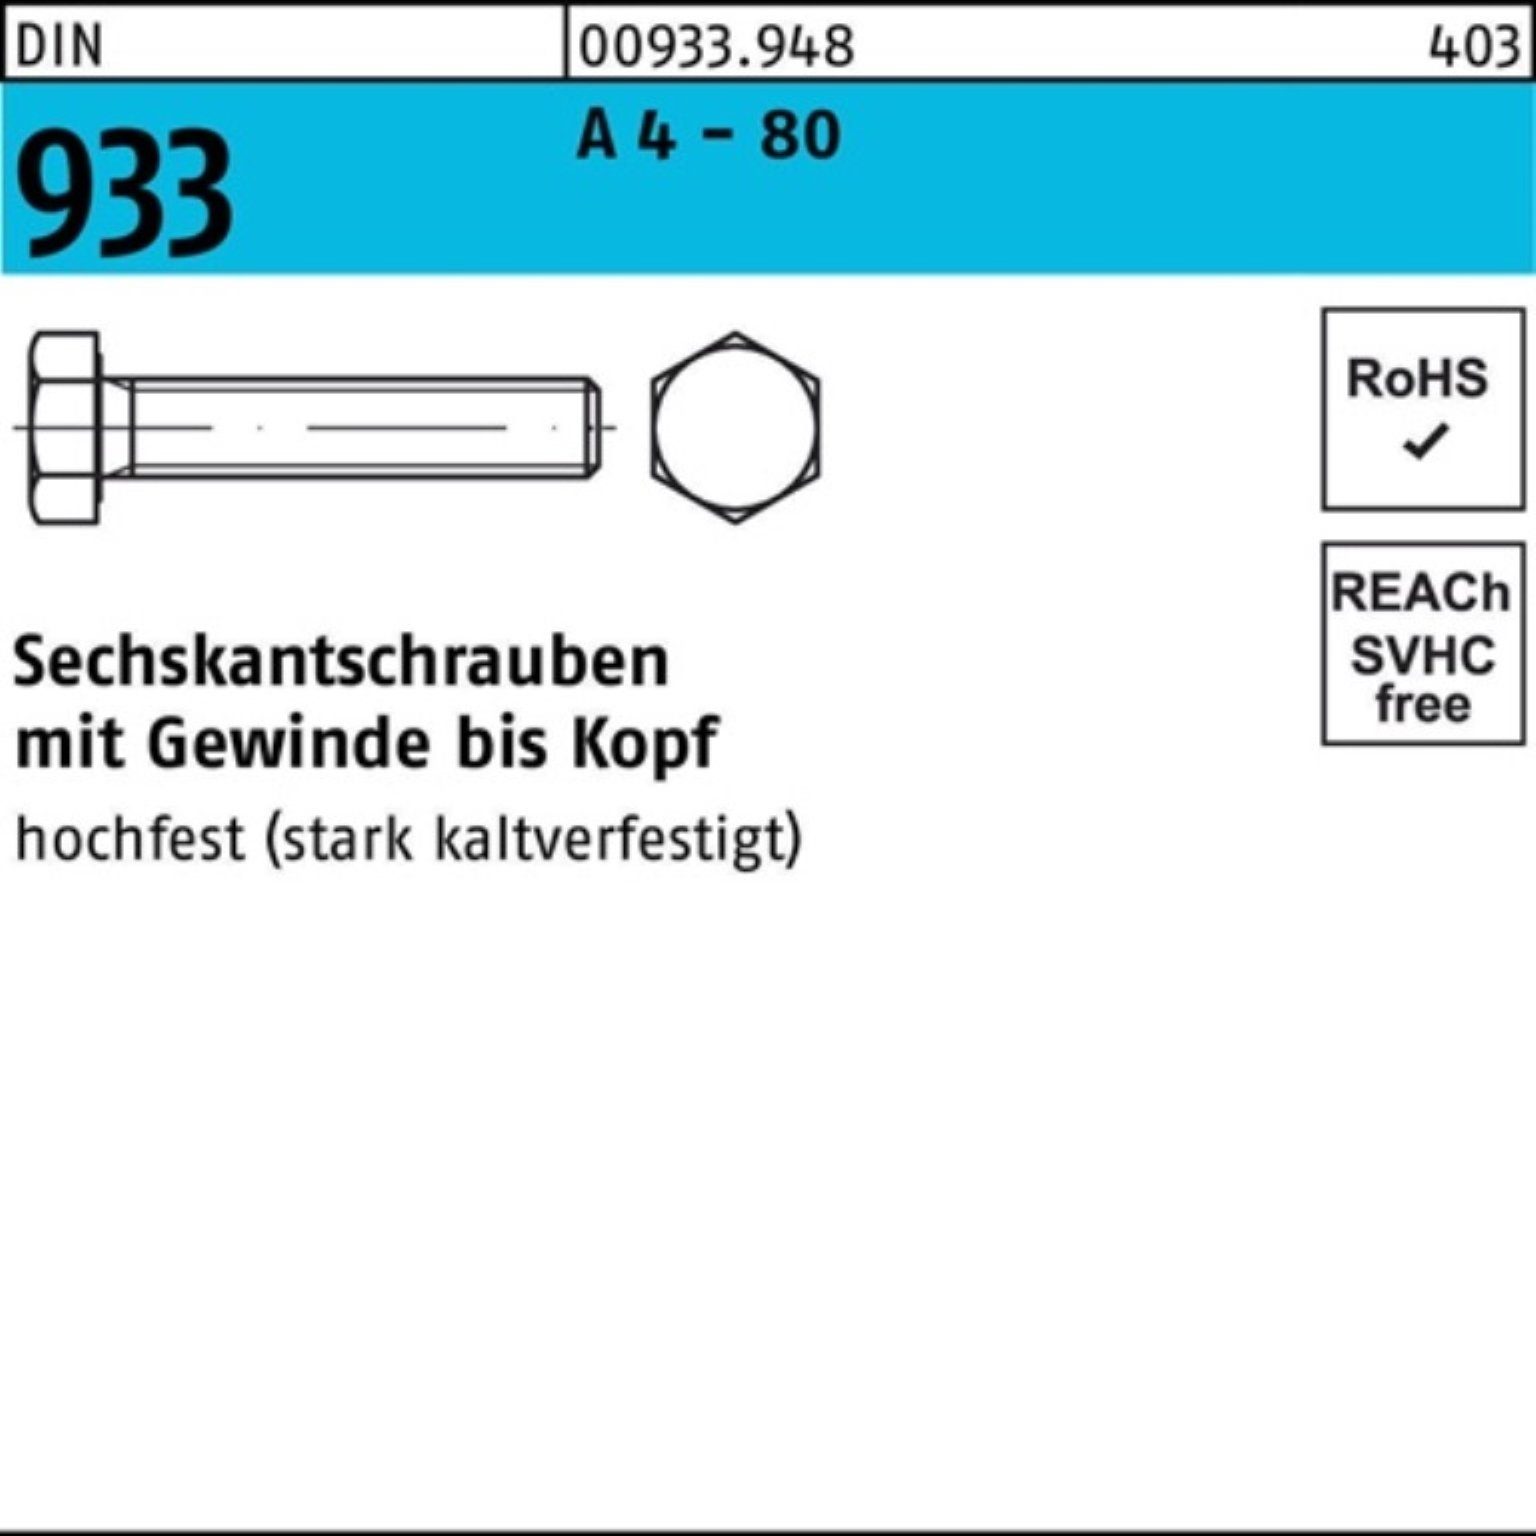 Reyher Sechskantschraube 100er Pack Sechskantschraube DIN 933 VG M8x 20 A 4 - 80 100 Stück DIN